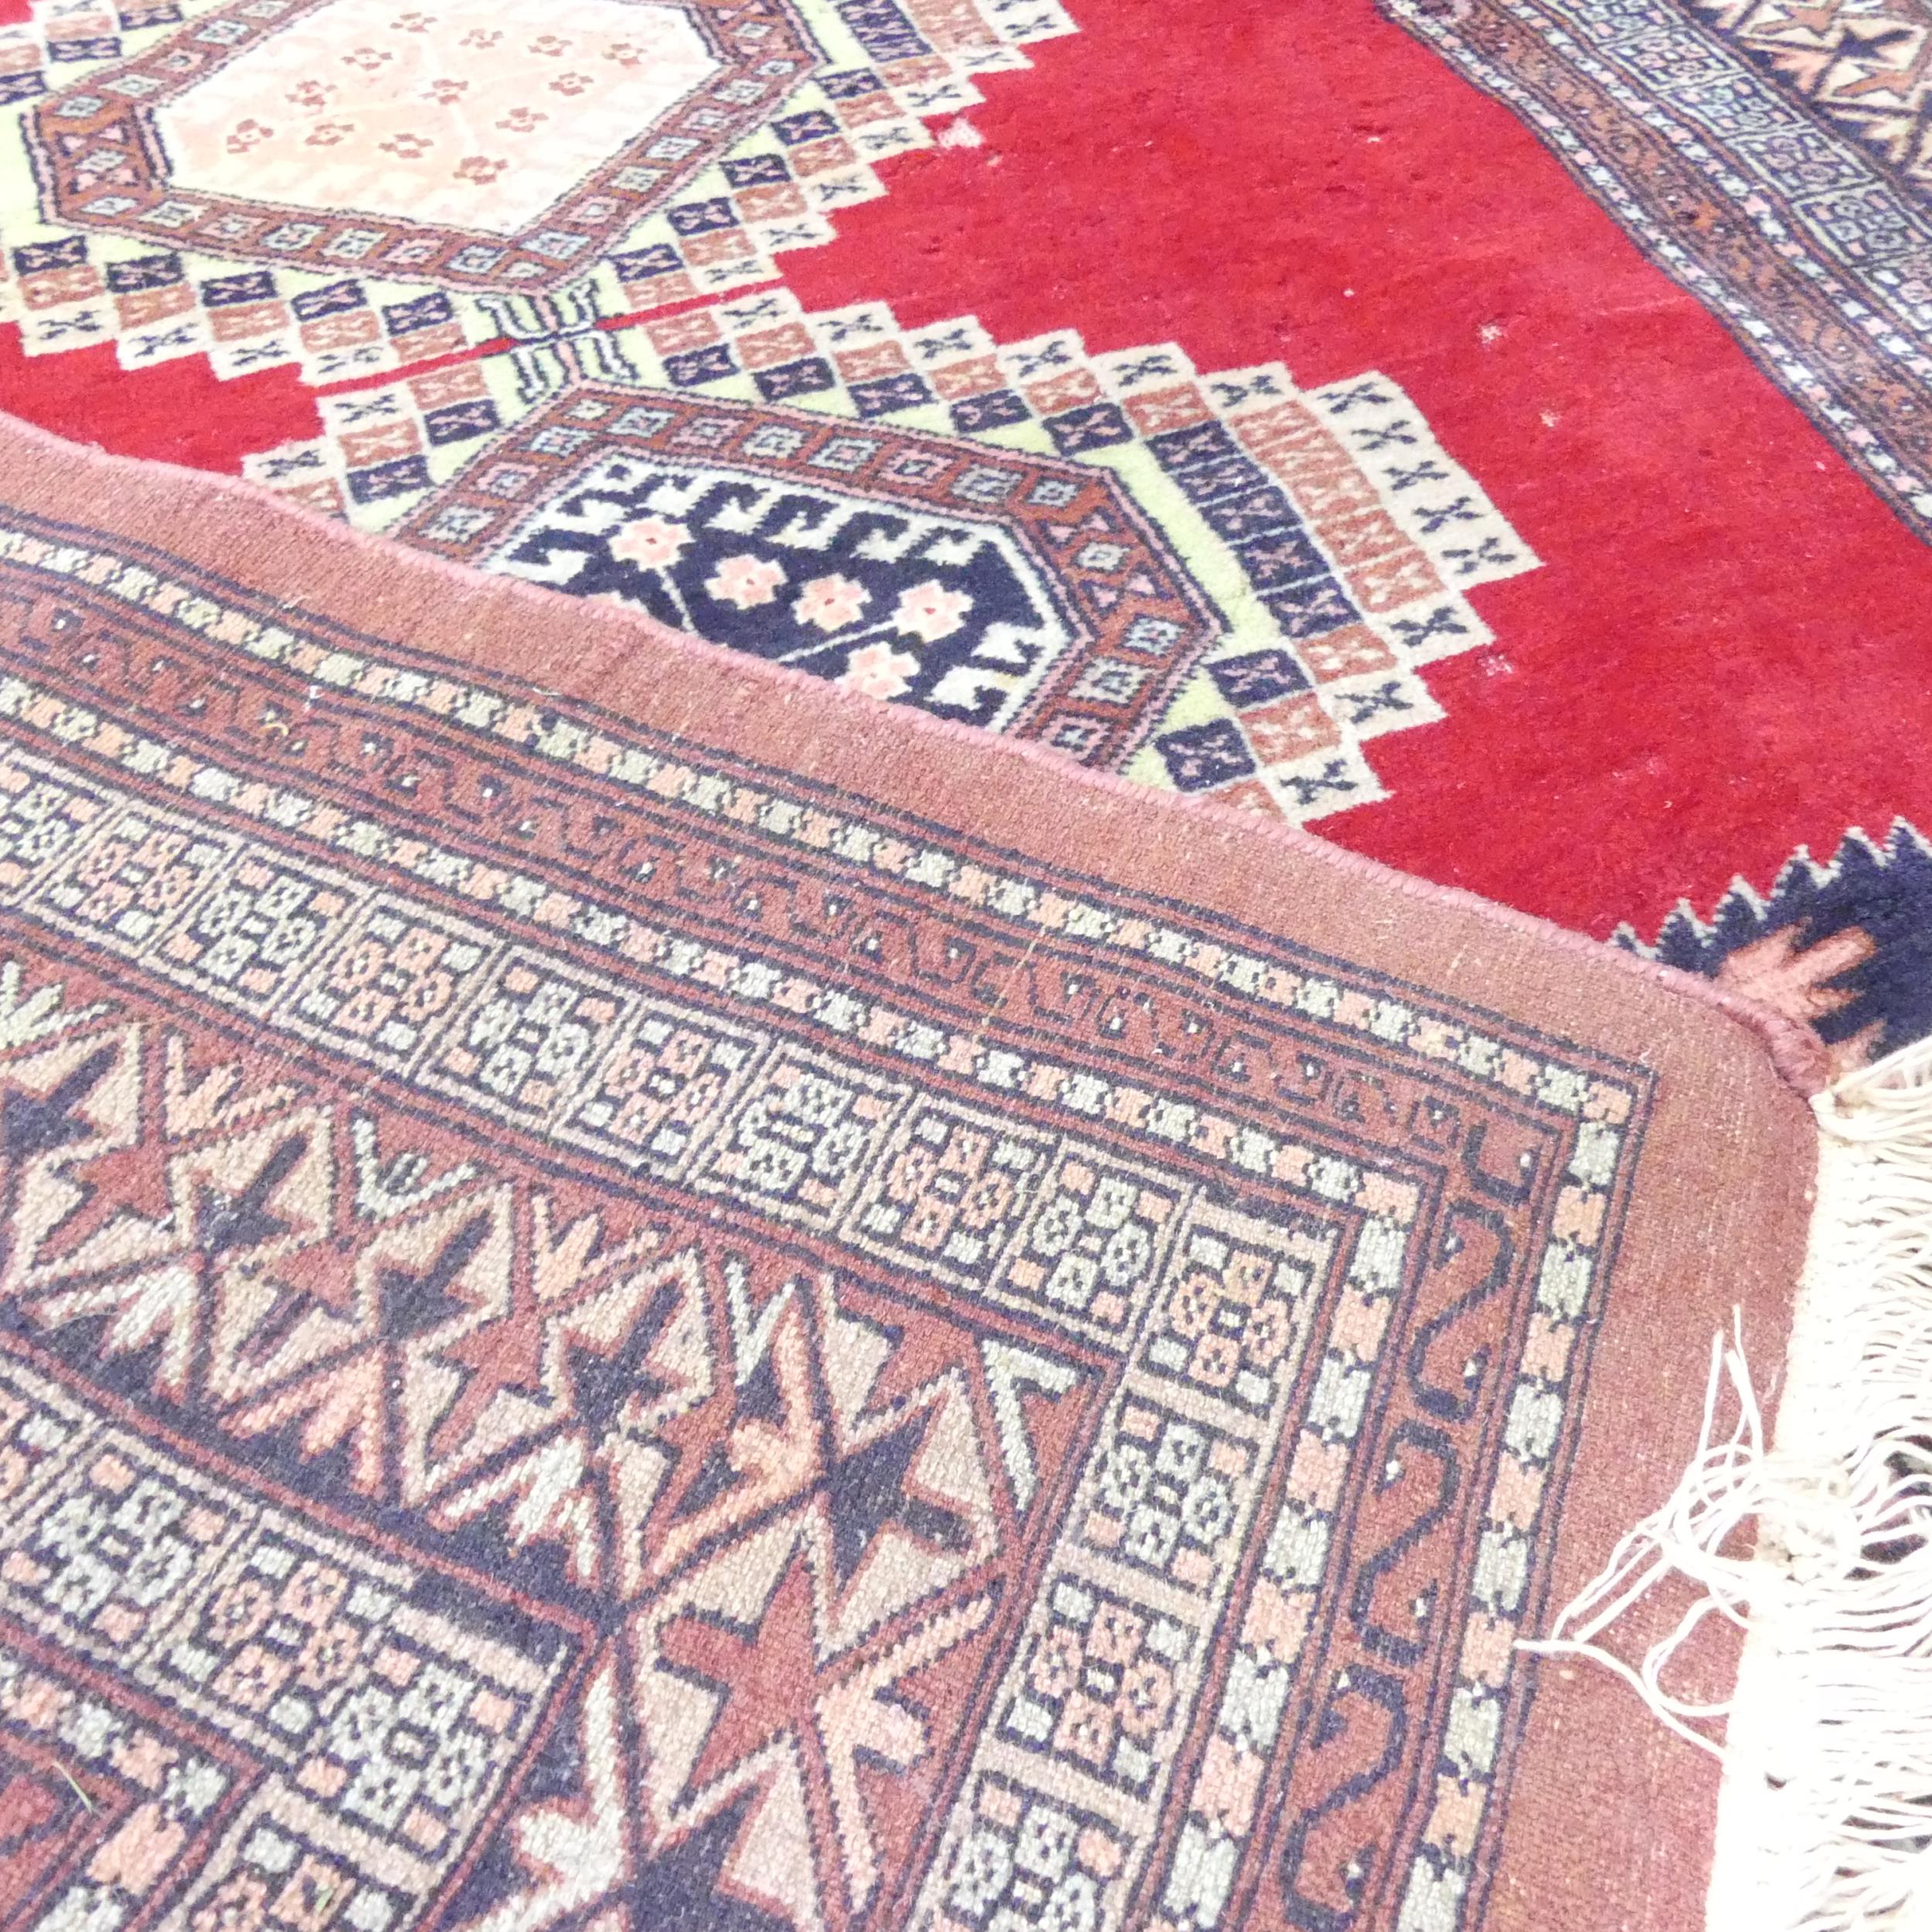 A handmade red ground Uzbek Bokhara rug. 205x130cm. - Image 2 of 2